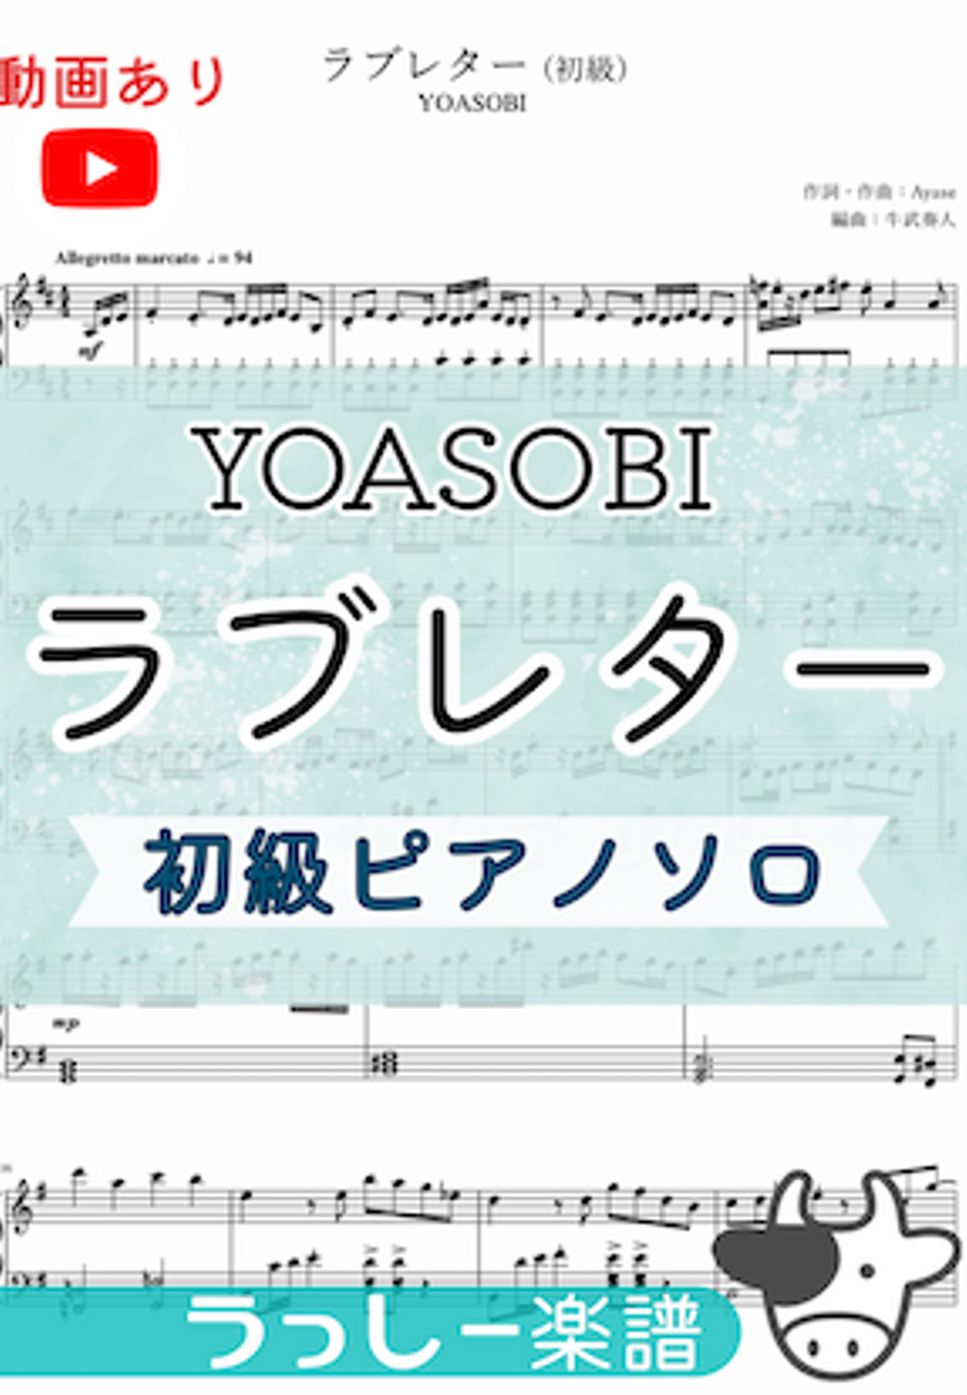 YOASOBI - ラブレター (初級ピアノソロ) by 牛武奏人